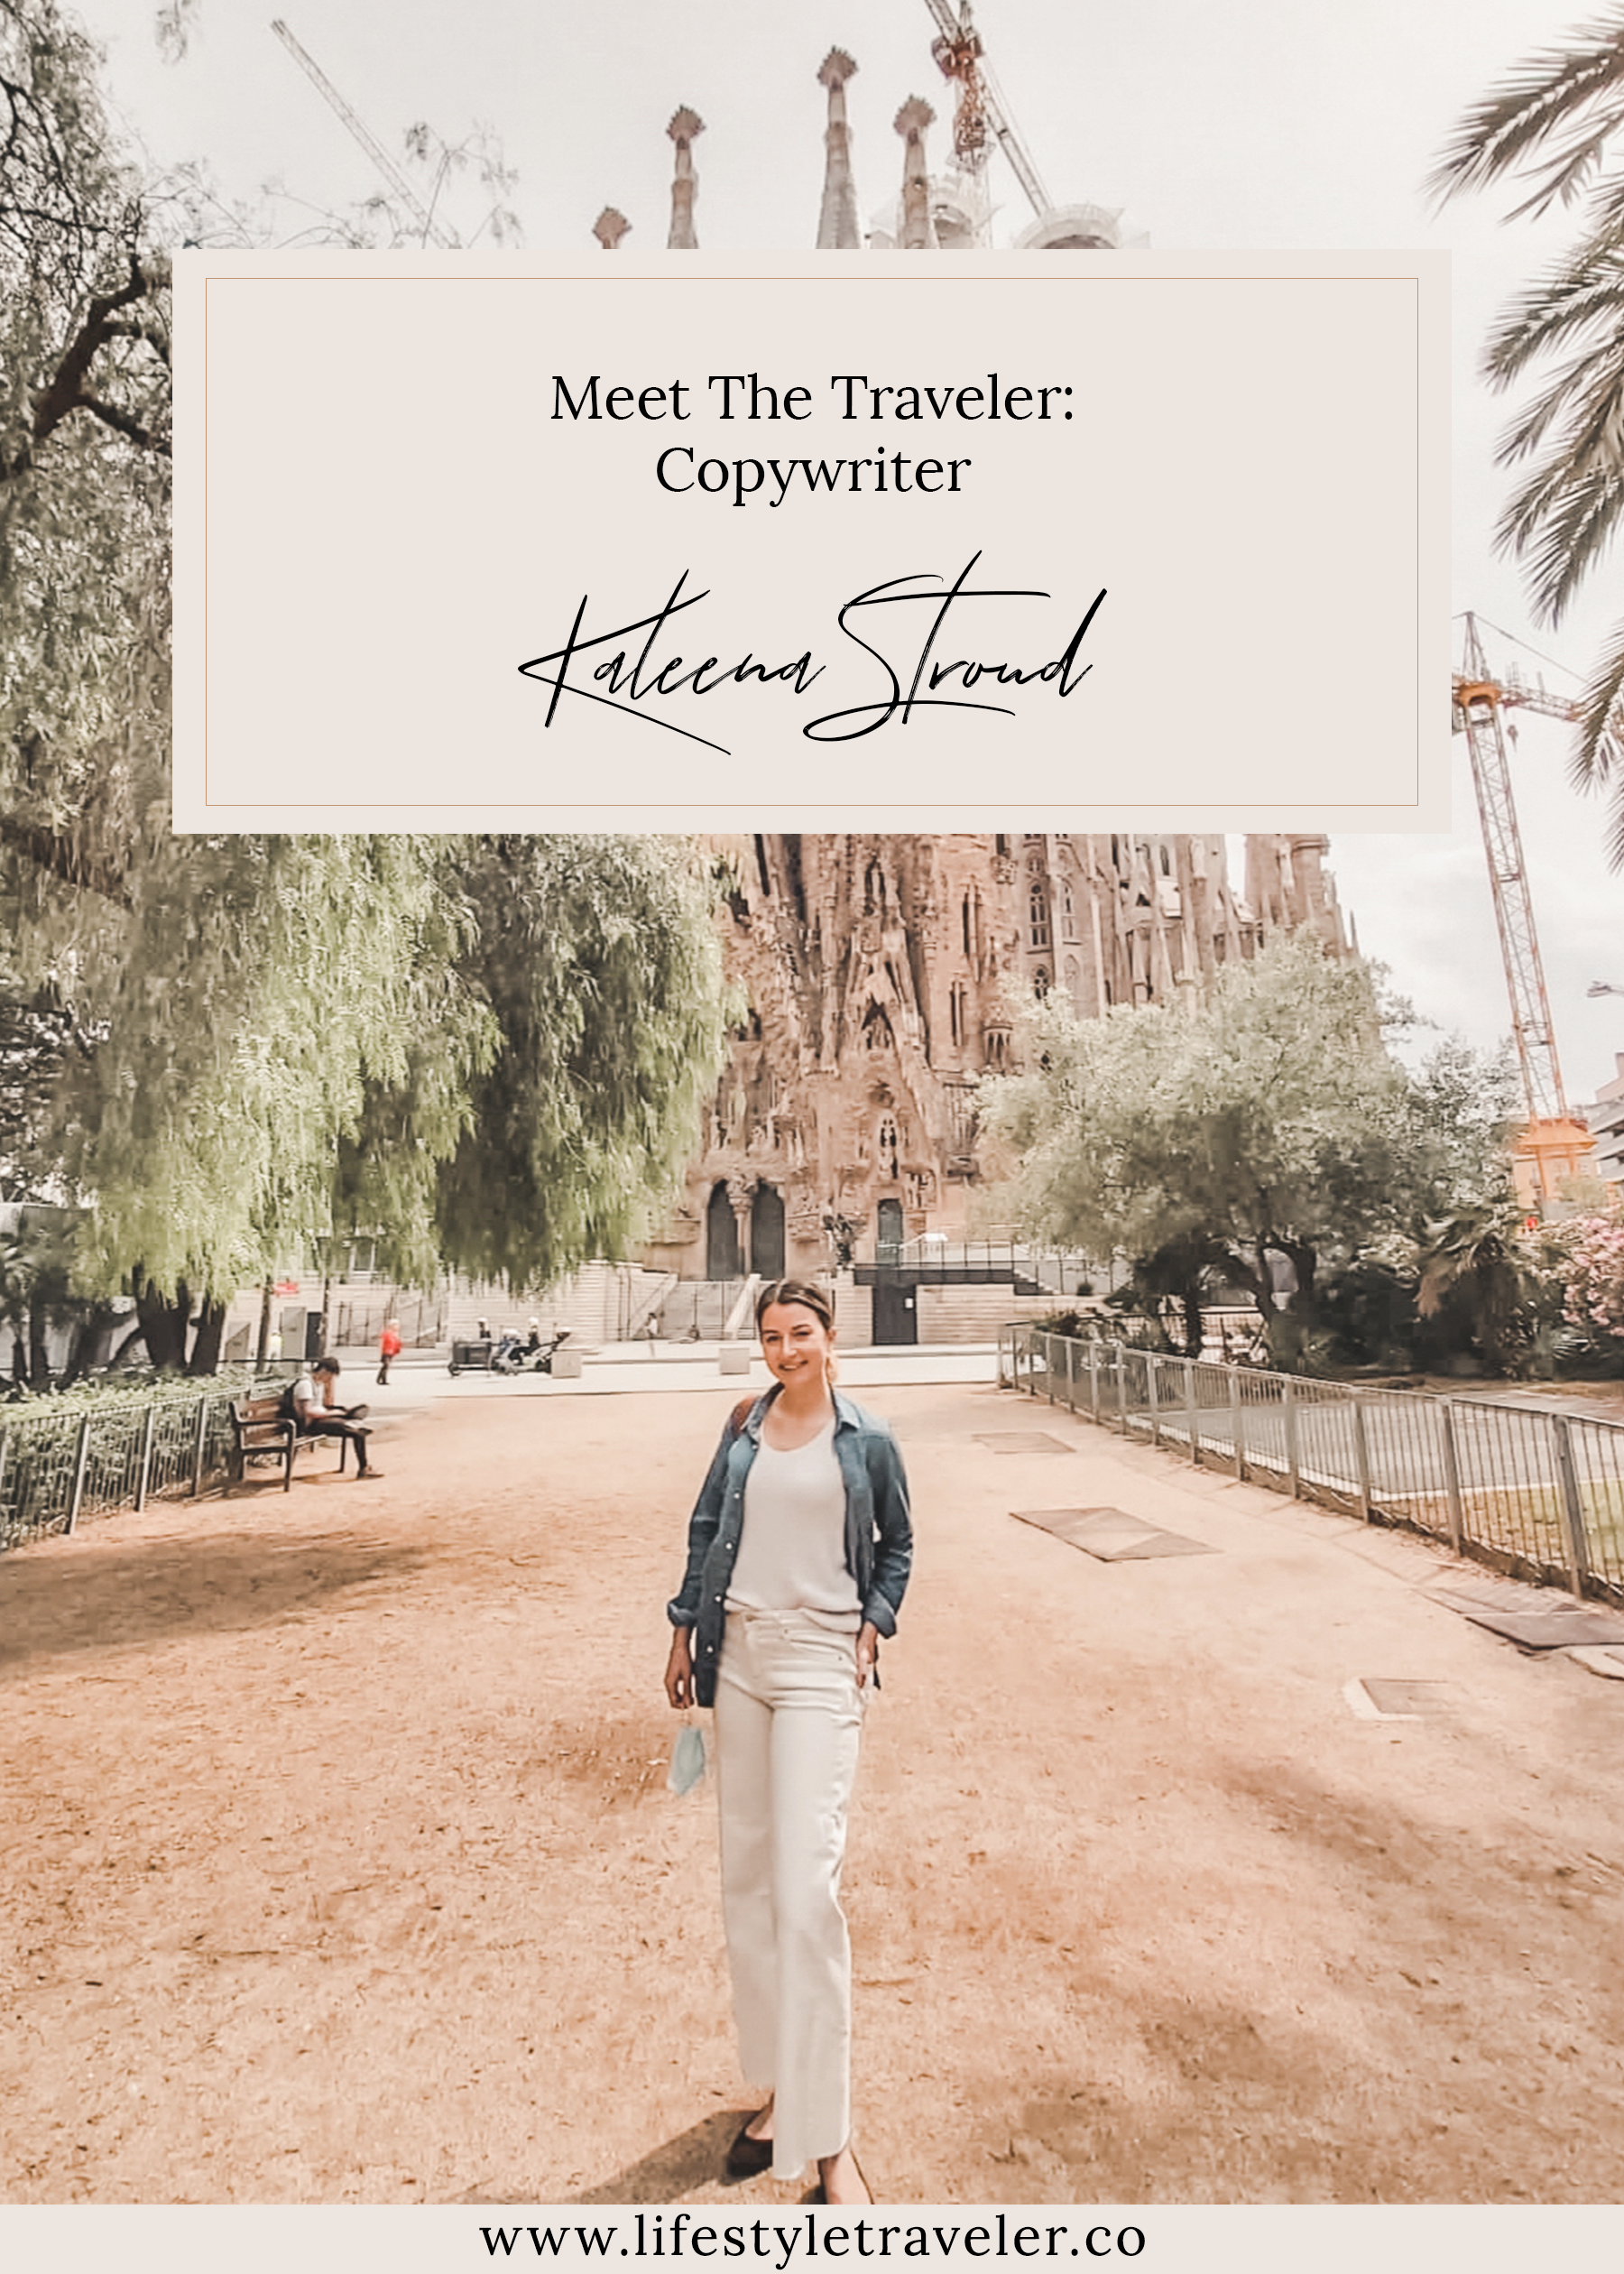 Meet The Traveler: Copywriter Kaleena Stroud | lifestyletraveler.co | IG: @lifestyletraveler.co | Photo by: Kaleena Stroud